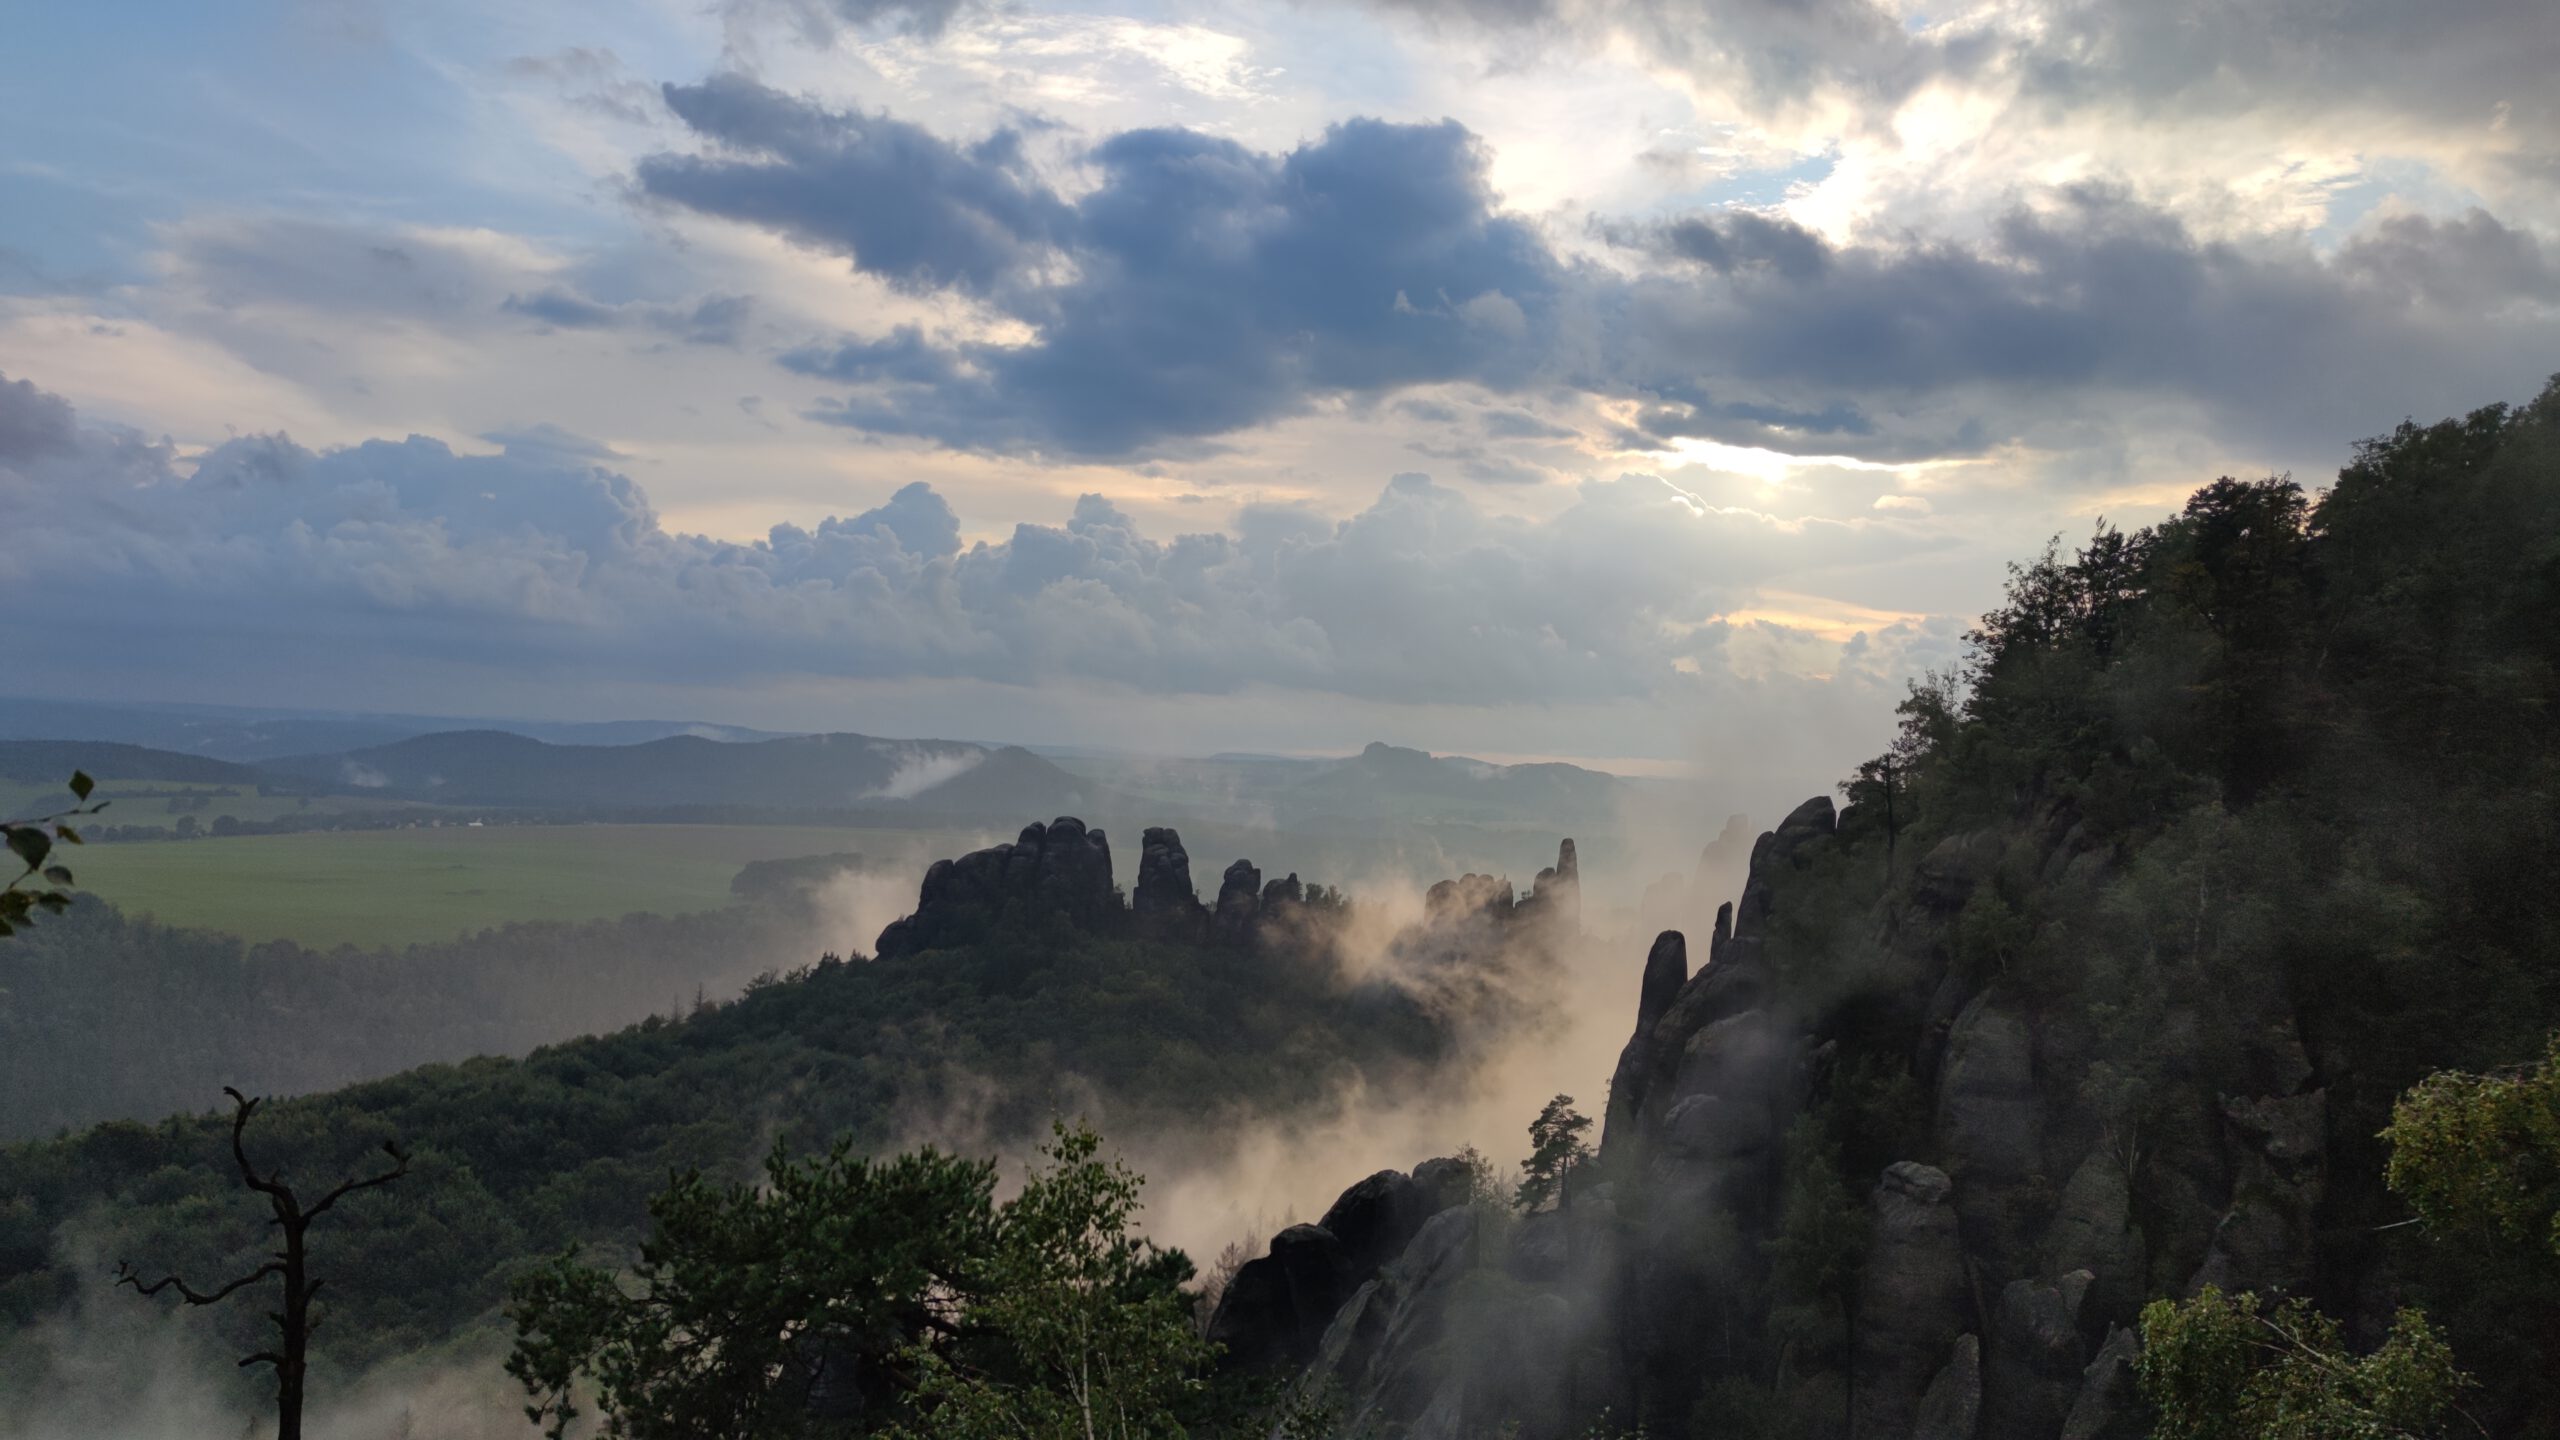 Ausblick von den Schrammsteinen in der Sächsischen Schweiz auf Felsen, Wald und einen neblig bewölkten Himmel.